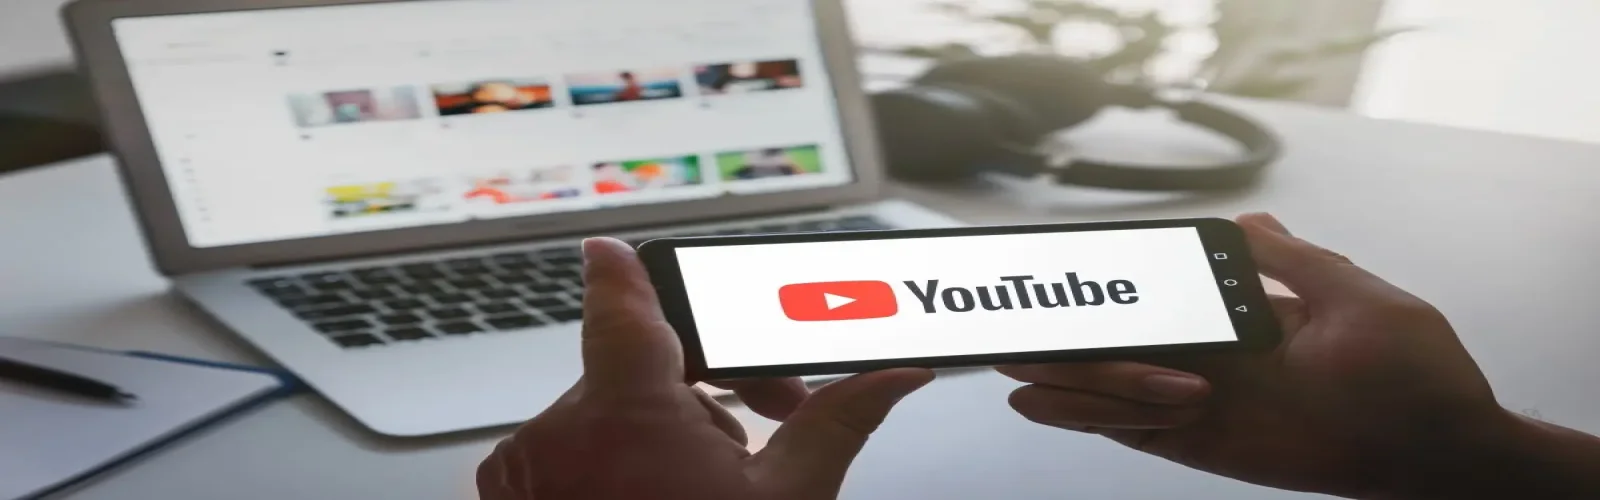 یوتیوب پریمیوم و باز هم تبلیغات